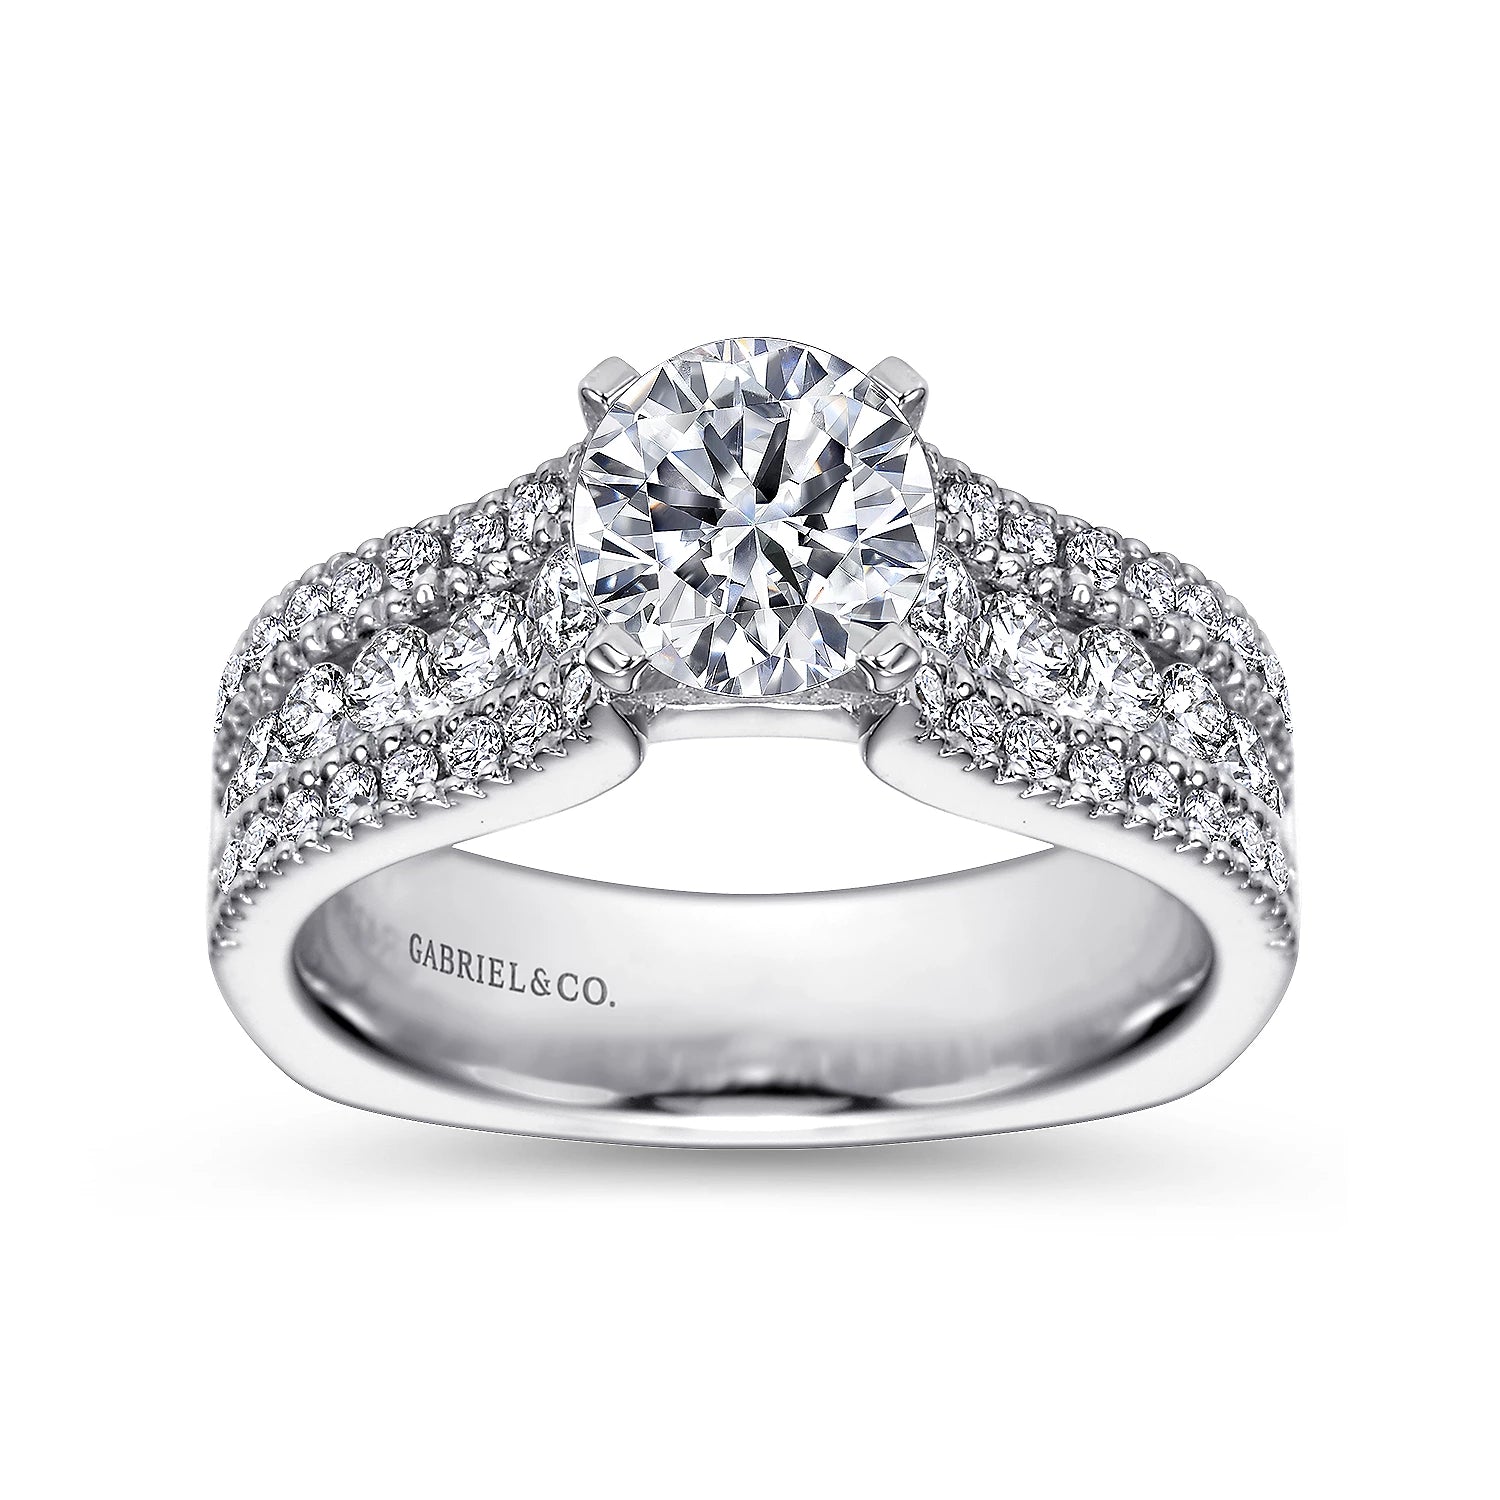 Is My Ring Too Big? Or Am i Just Not Used To It? | Weddings, Wedding Attire  | Wedding Forums | WeddingWire